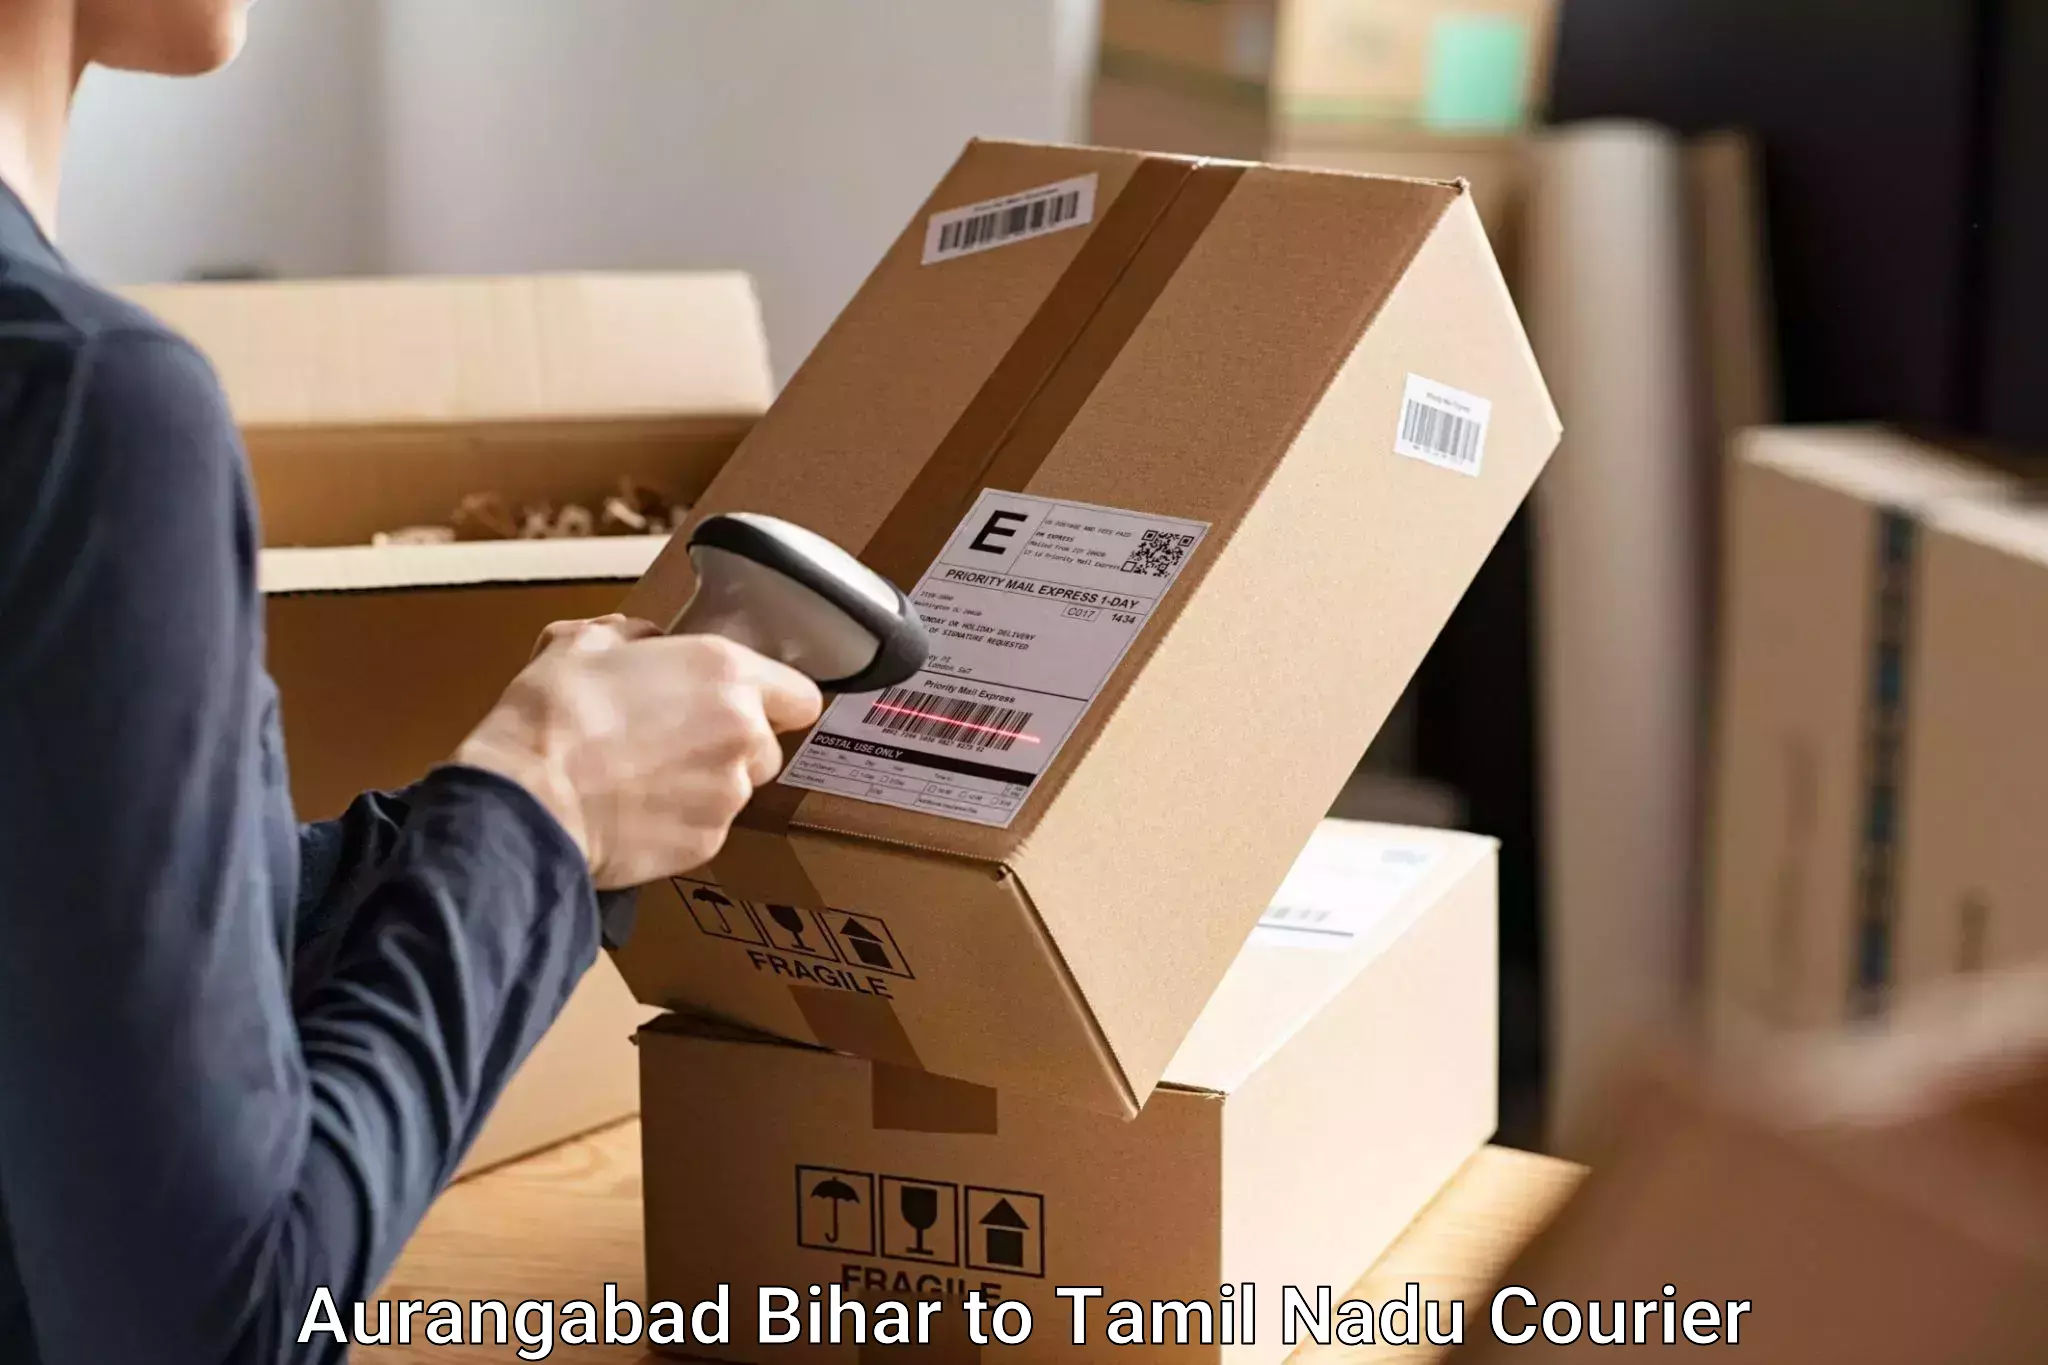 Luggage forwarding service Aurangabad Bihar to Sirkali